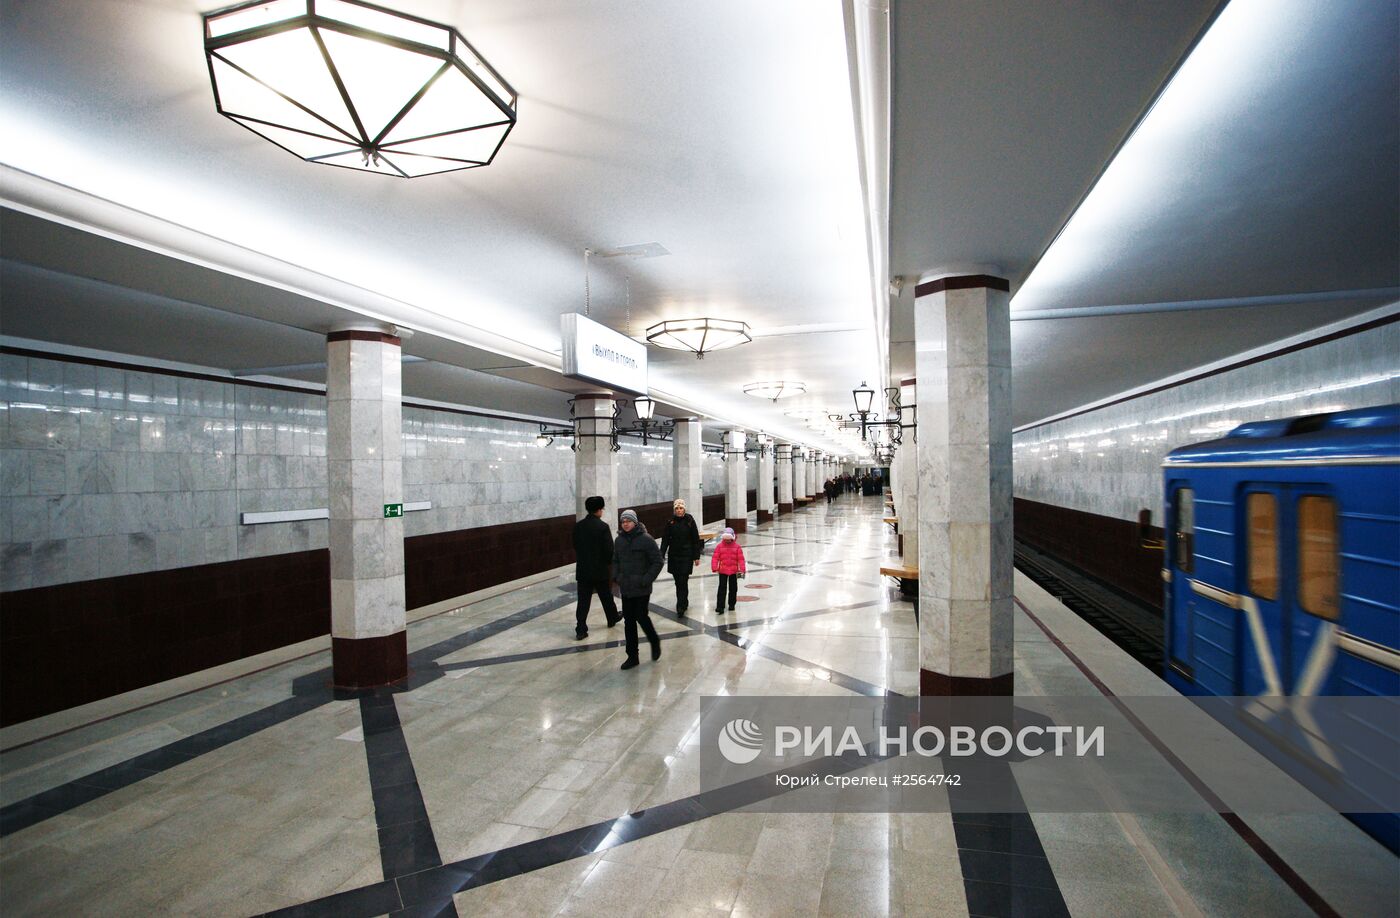 Открытие новой станции метрополитена в Самаре